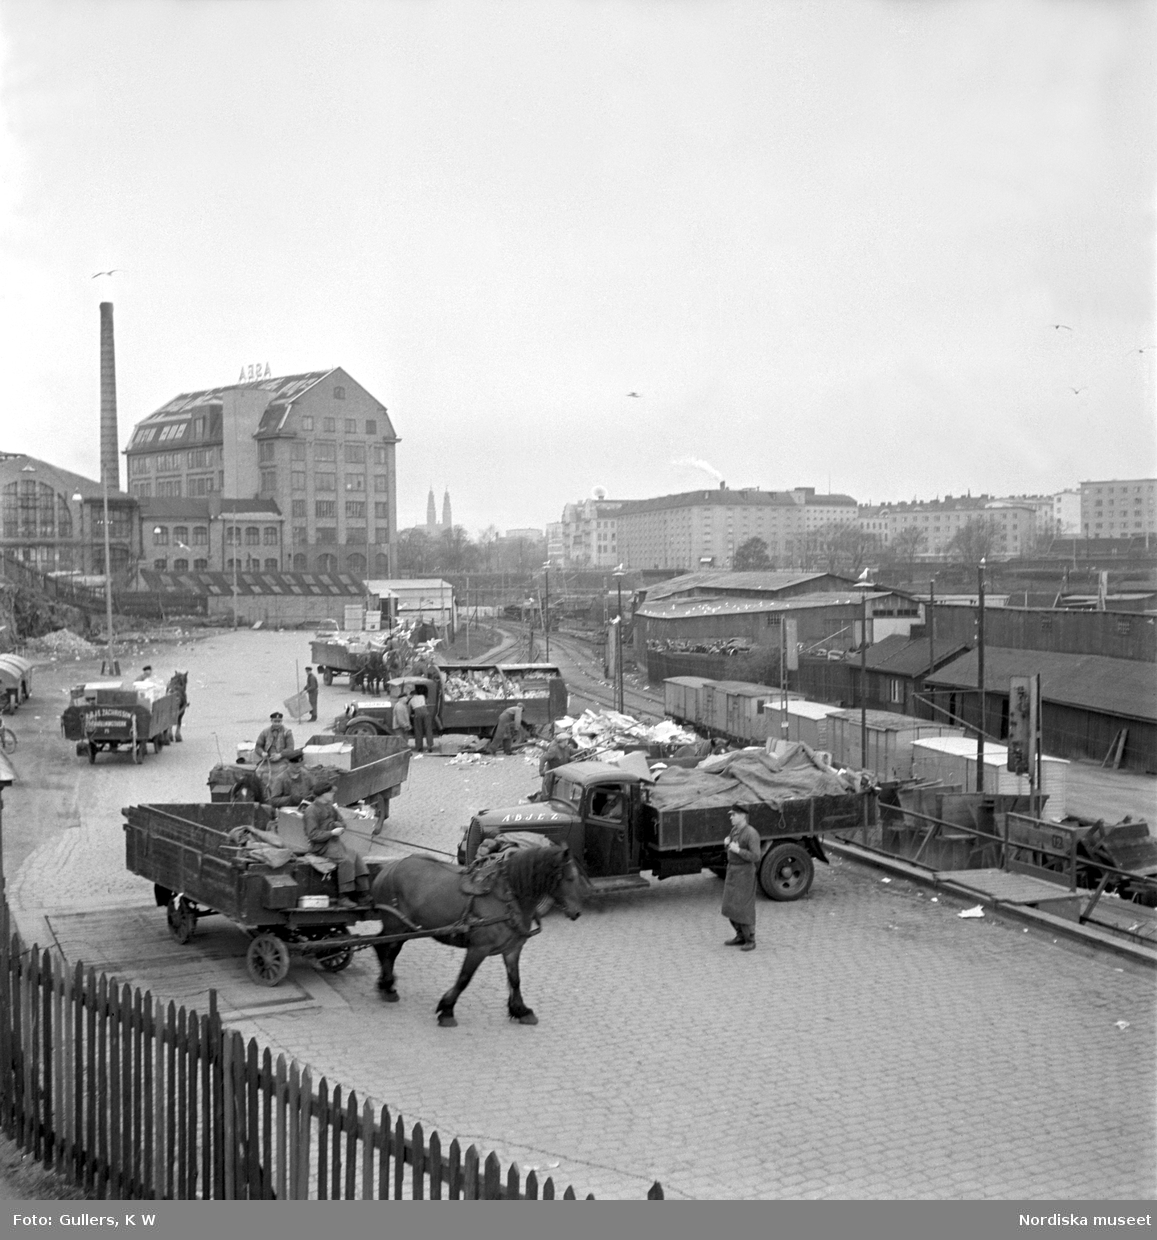 Södermalm, Stockholm. Sopåkare vid Södra stationsområdet tömmer sina kärror i den väntande godsvagnarna. Lossning, lastbilar och hästar med kärror. Järnvägsspår.